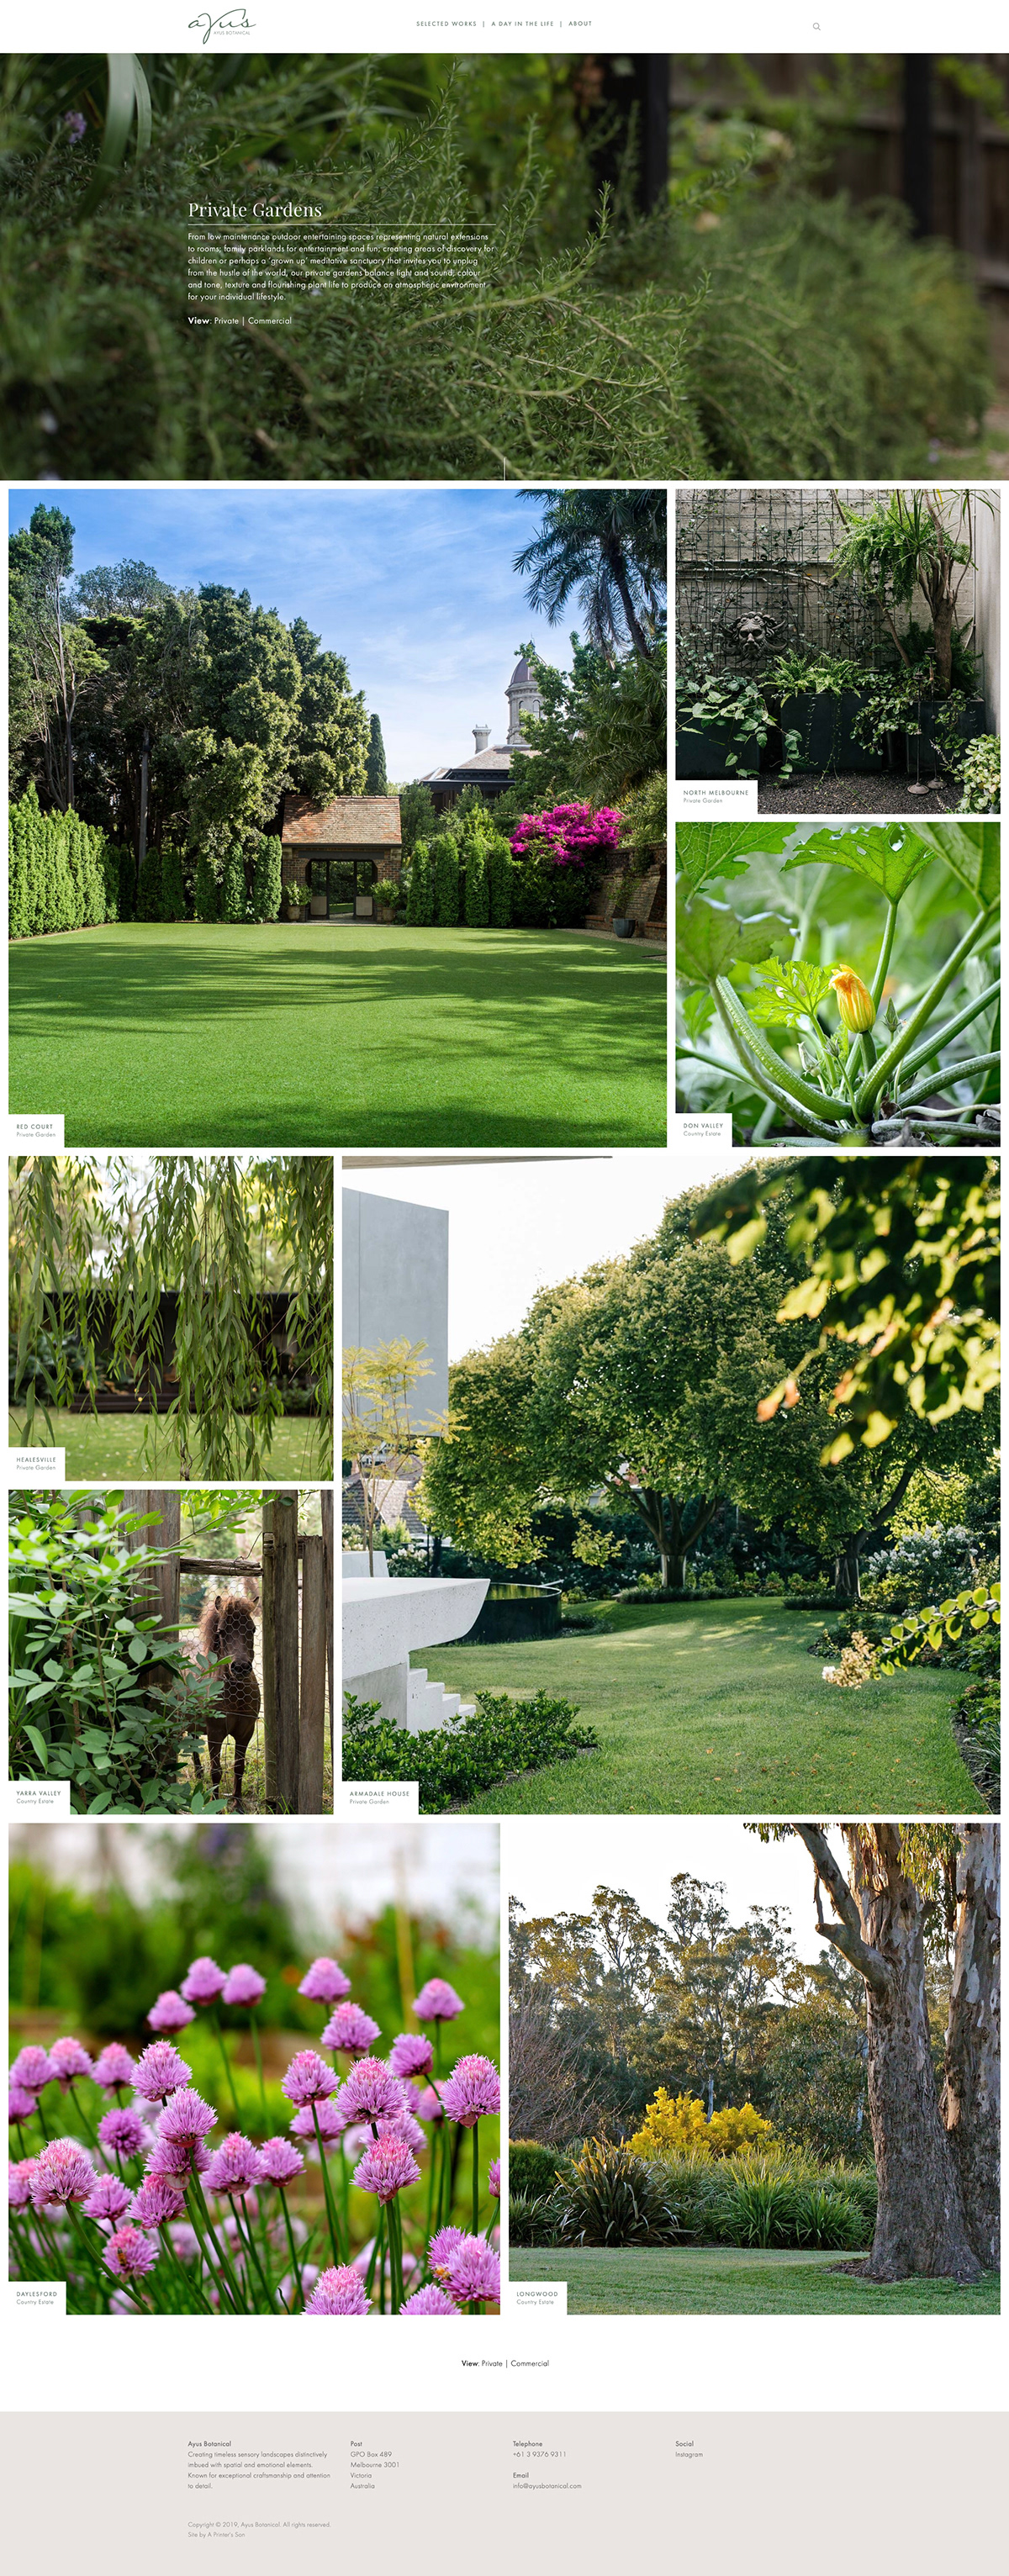 Ayus Botanical Landscape Design garden design squarespace Website grid based The Printer's Son